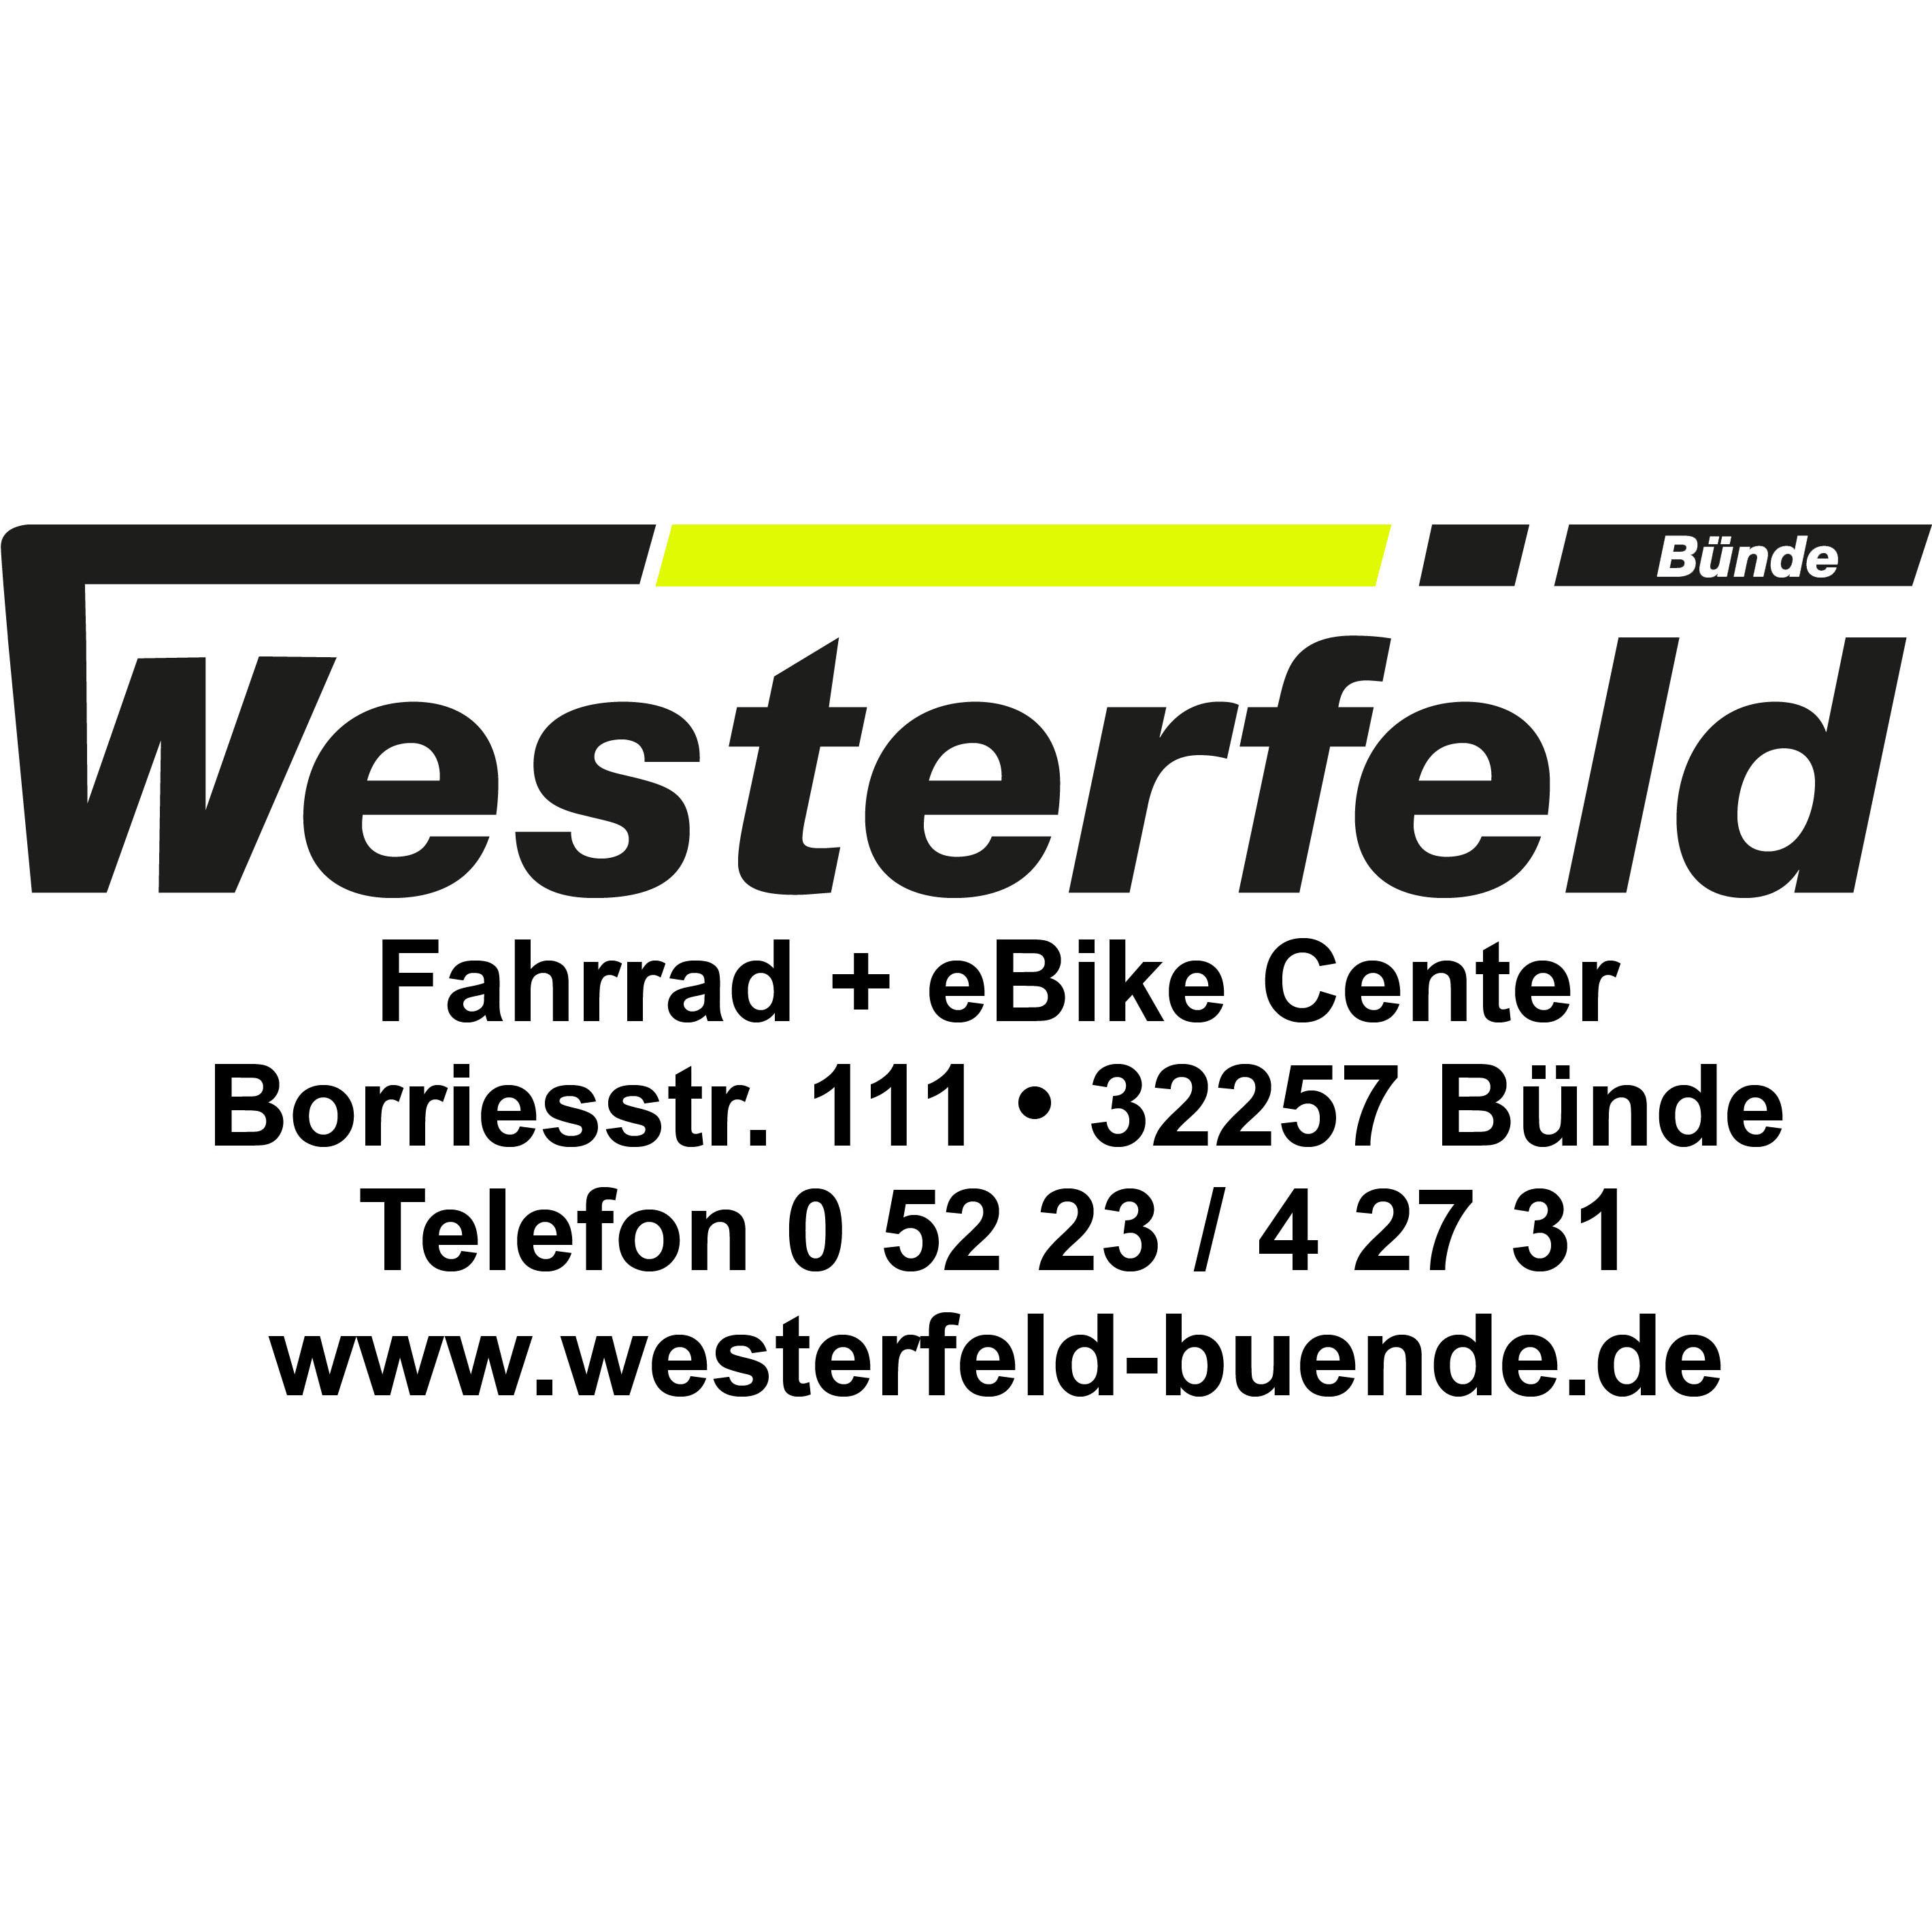 Zweiradhaus Westerfeld GmbH Fahrräder in Bünde Borriesstr. 111